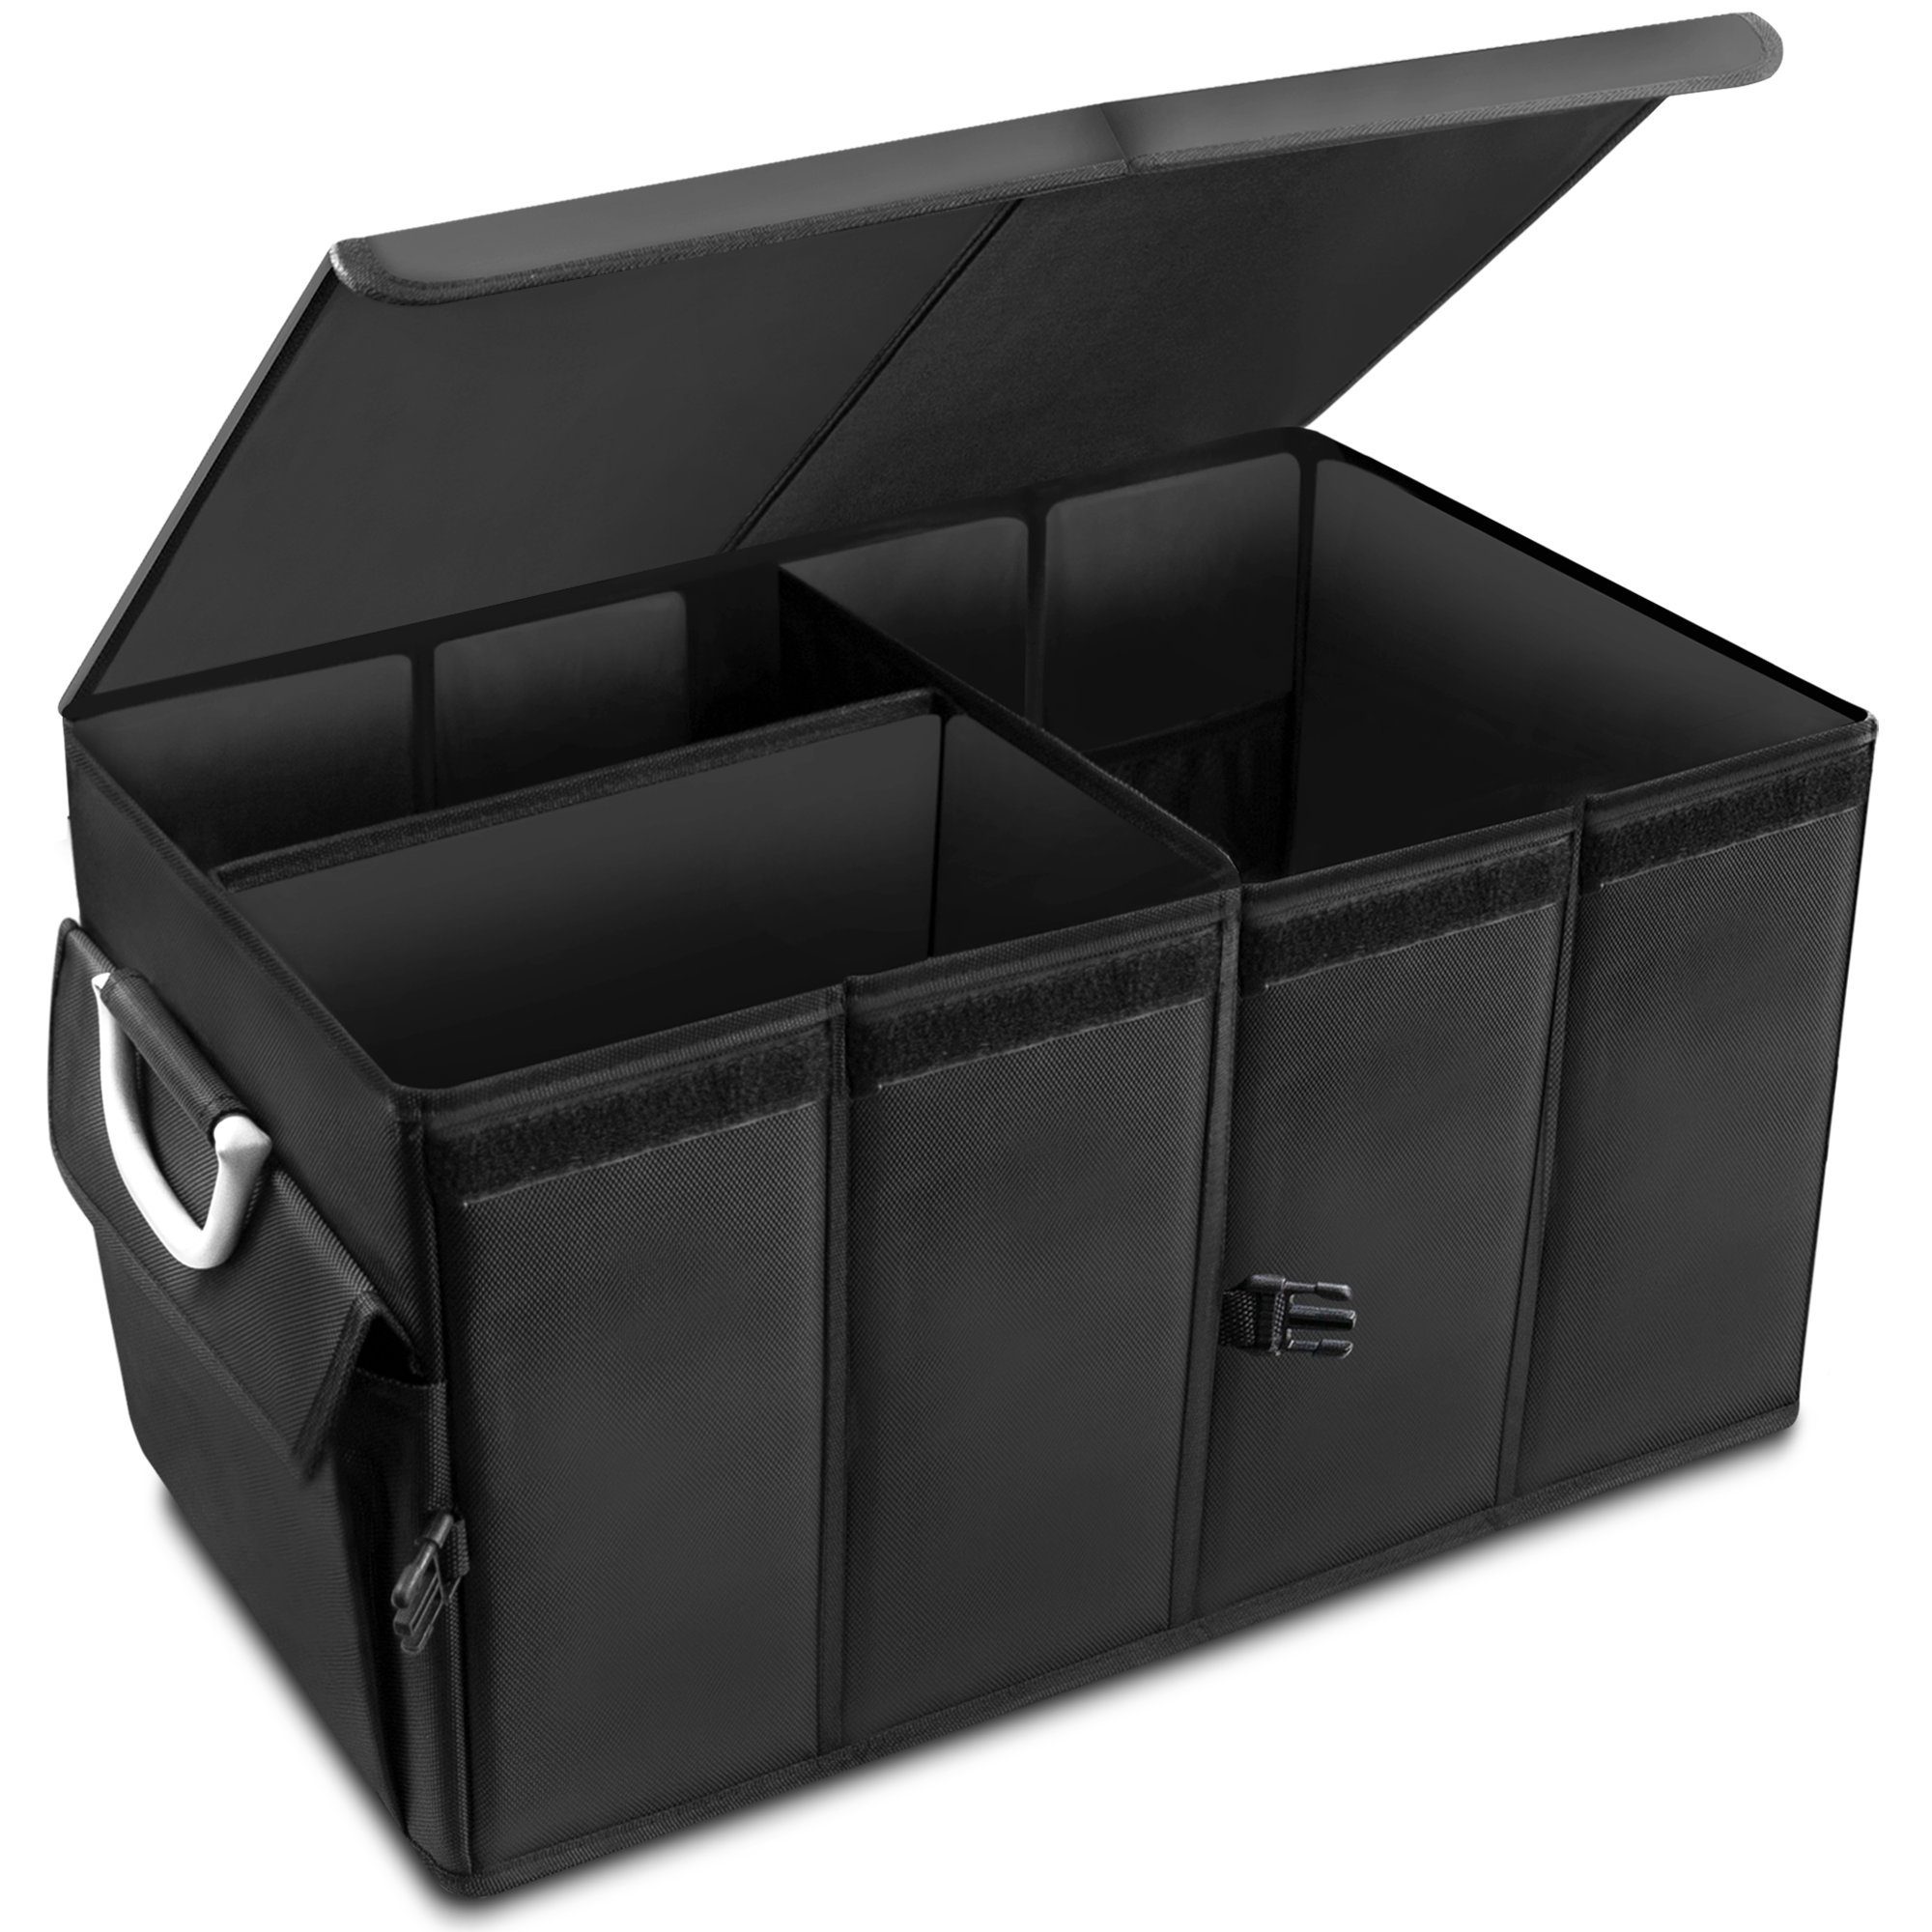 osoltus Carbox Kofferraum Trachtentasche Organizer 60x35x30cm Kofferraumtasche osoltus